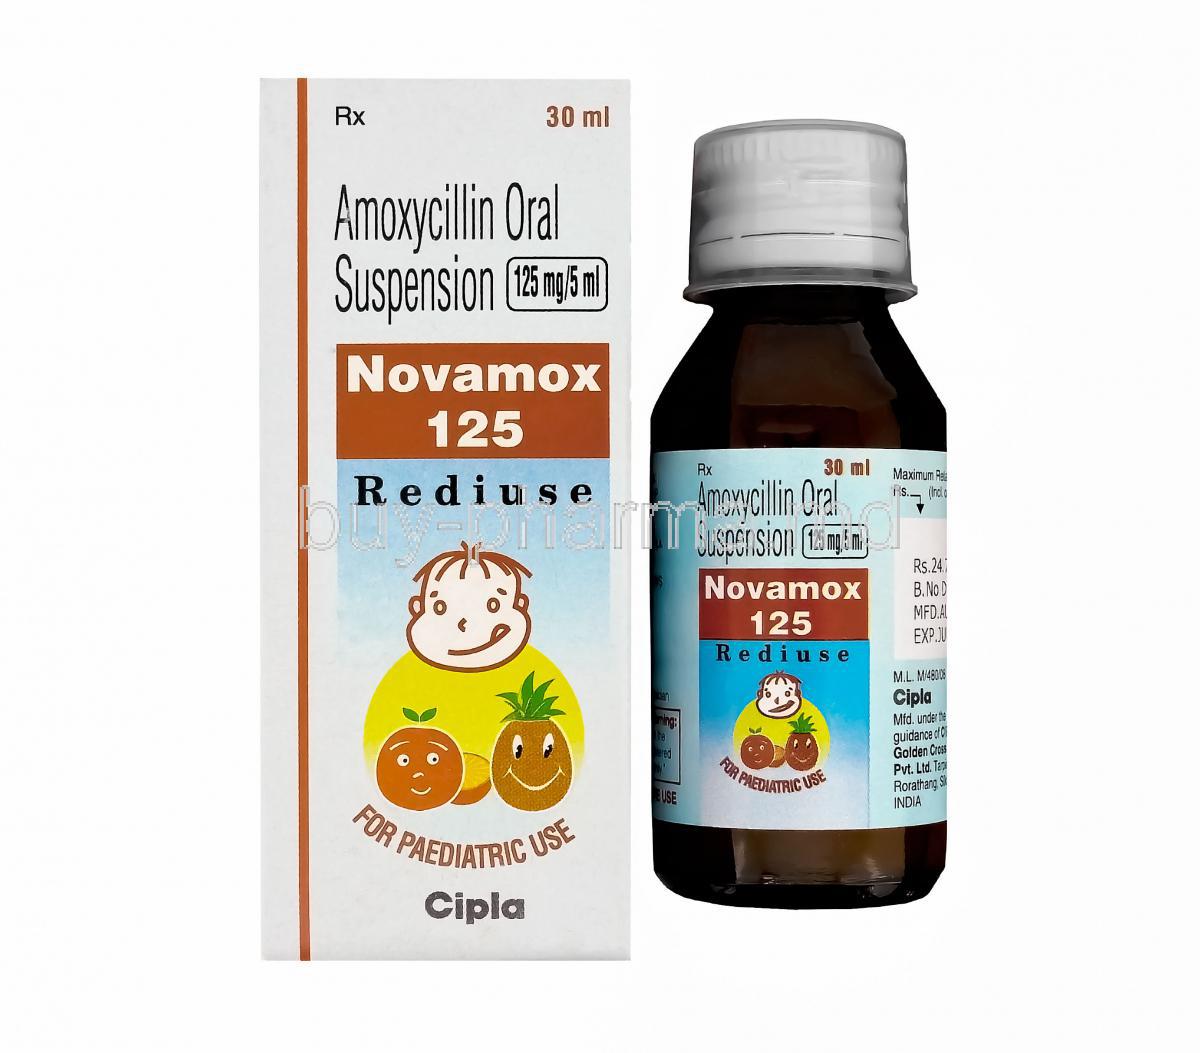 Novamox 125 Rediuse, Generic Amoxil Dry Syrup, Amoxycillin 125 mg per 5 ml